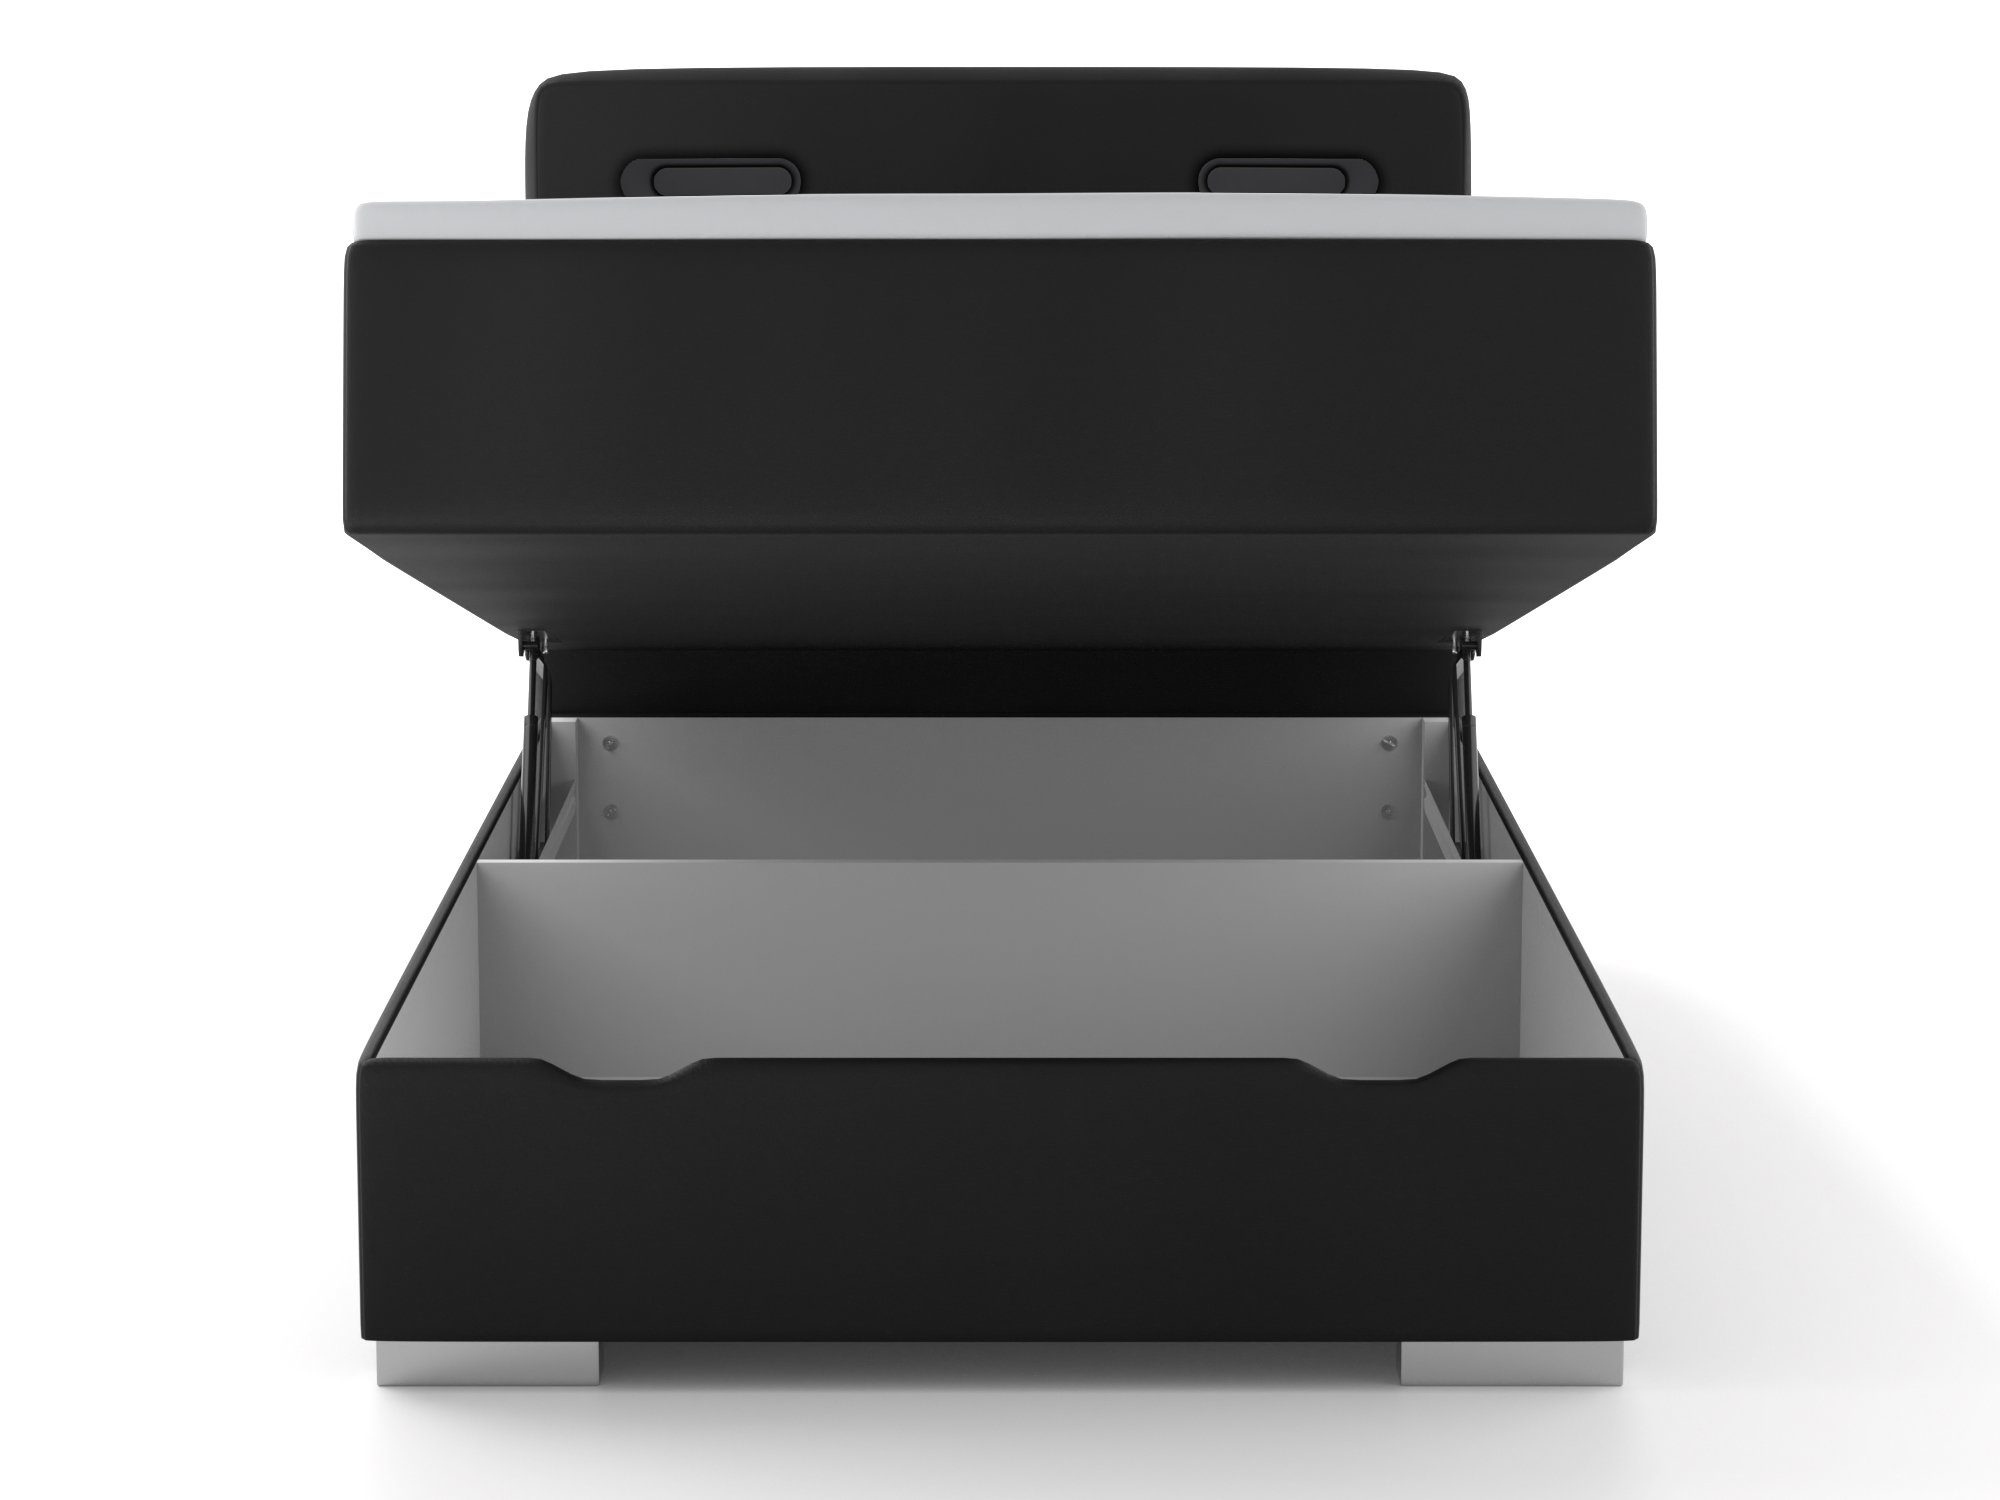 Boxspringbett 2x inkl. wonello USB-Anschluss Bettkasten, Topper schwarz Modesto, und LED-Beleuchtung,